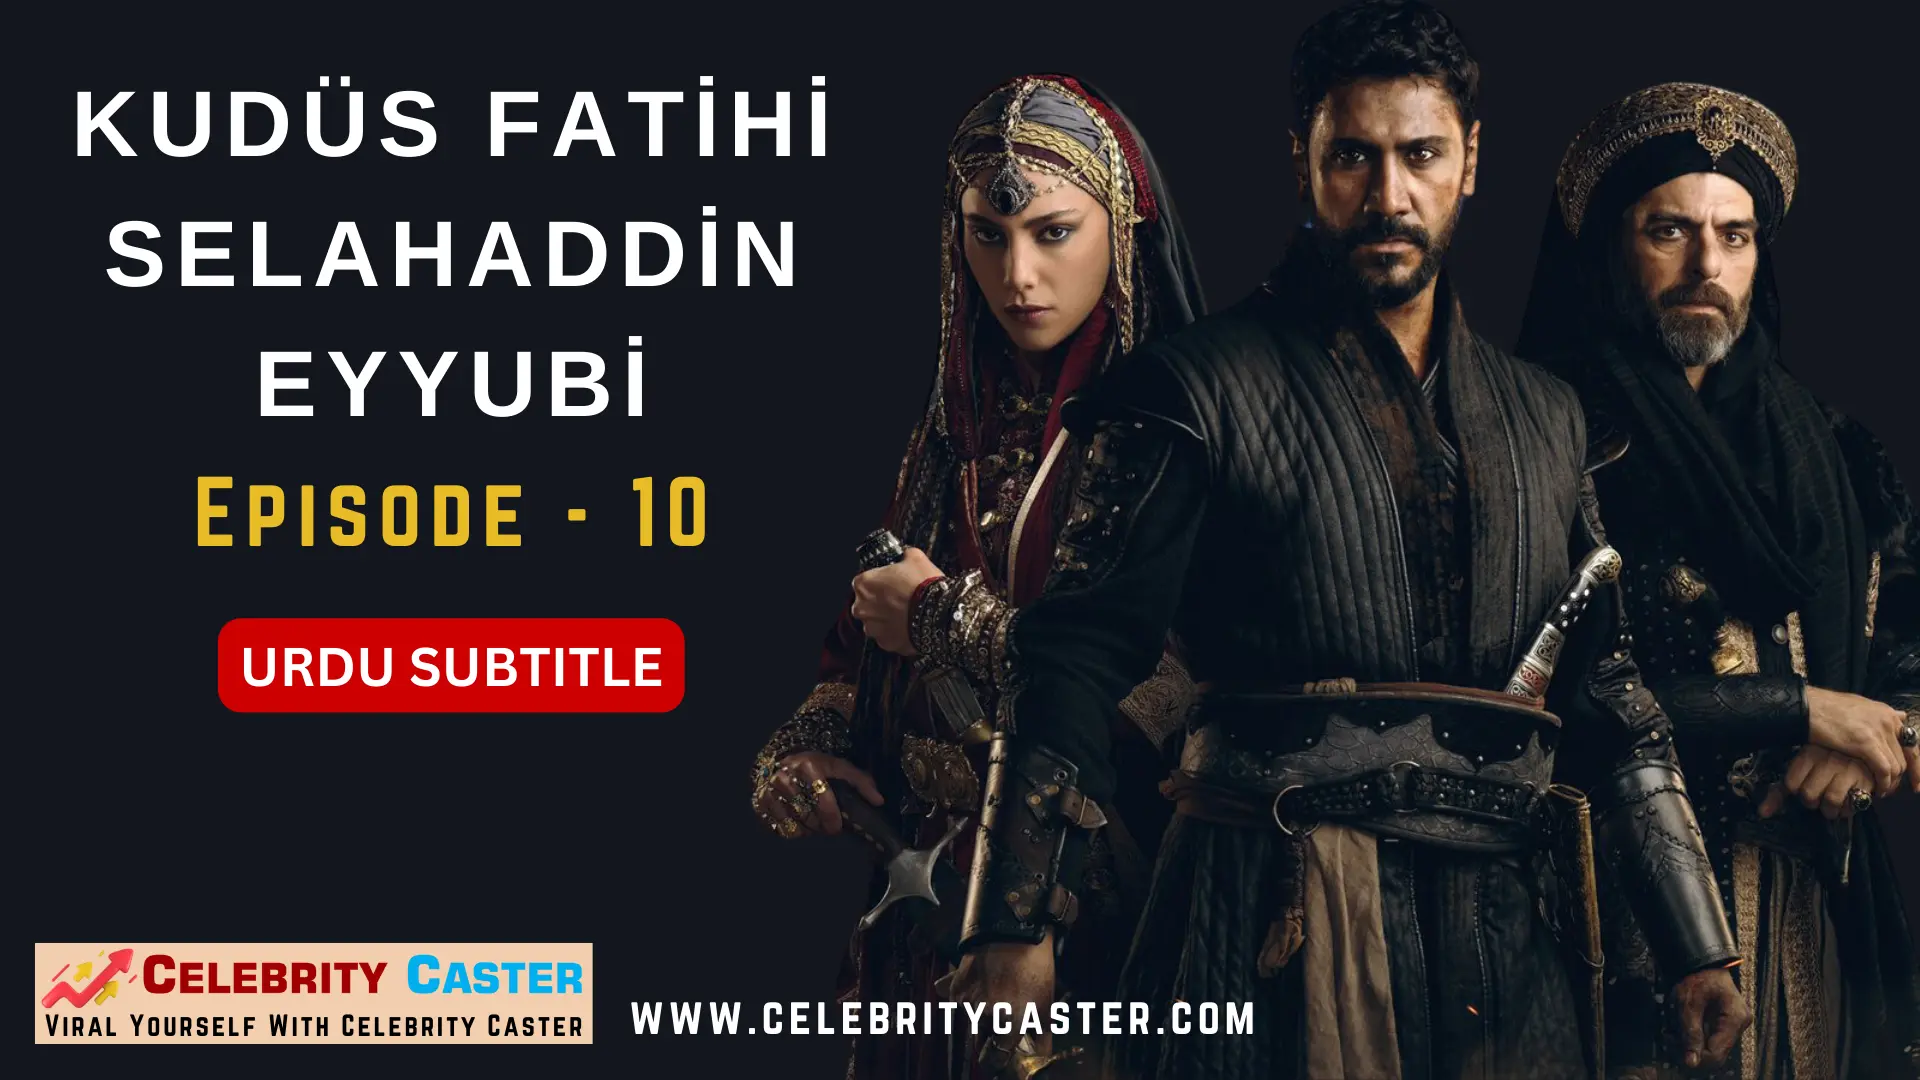 Fatihi Kudus Salahuddin Ayyubi Episode 1 Urdu Subtitle Free Download 10